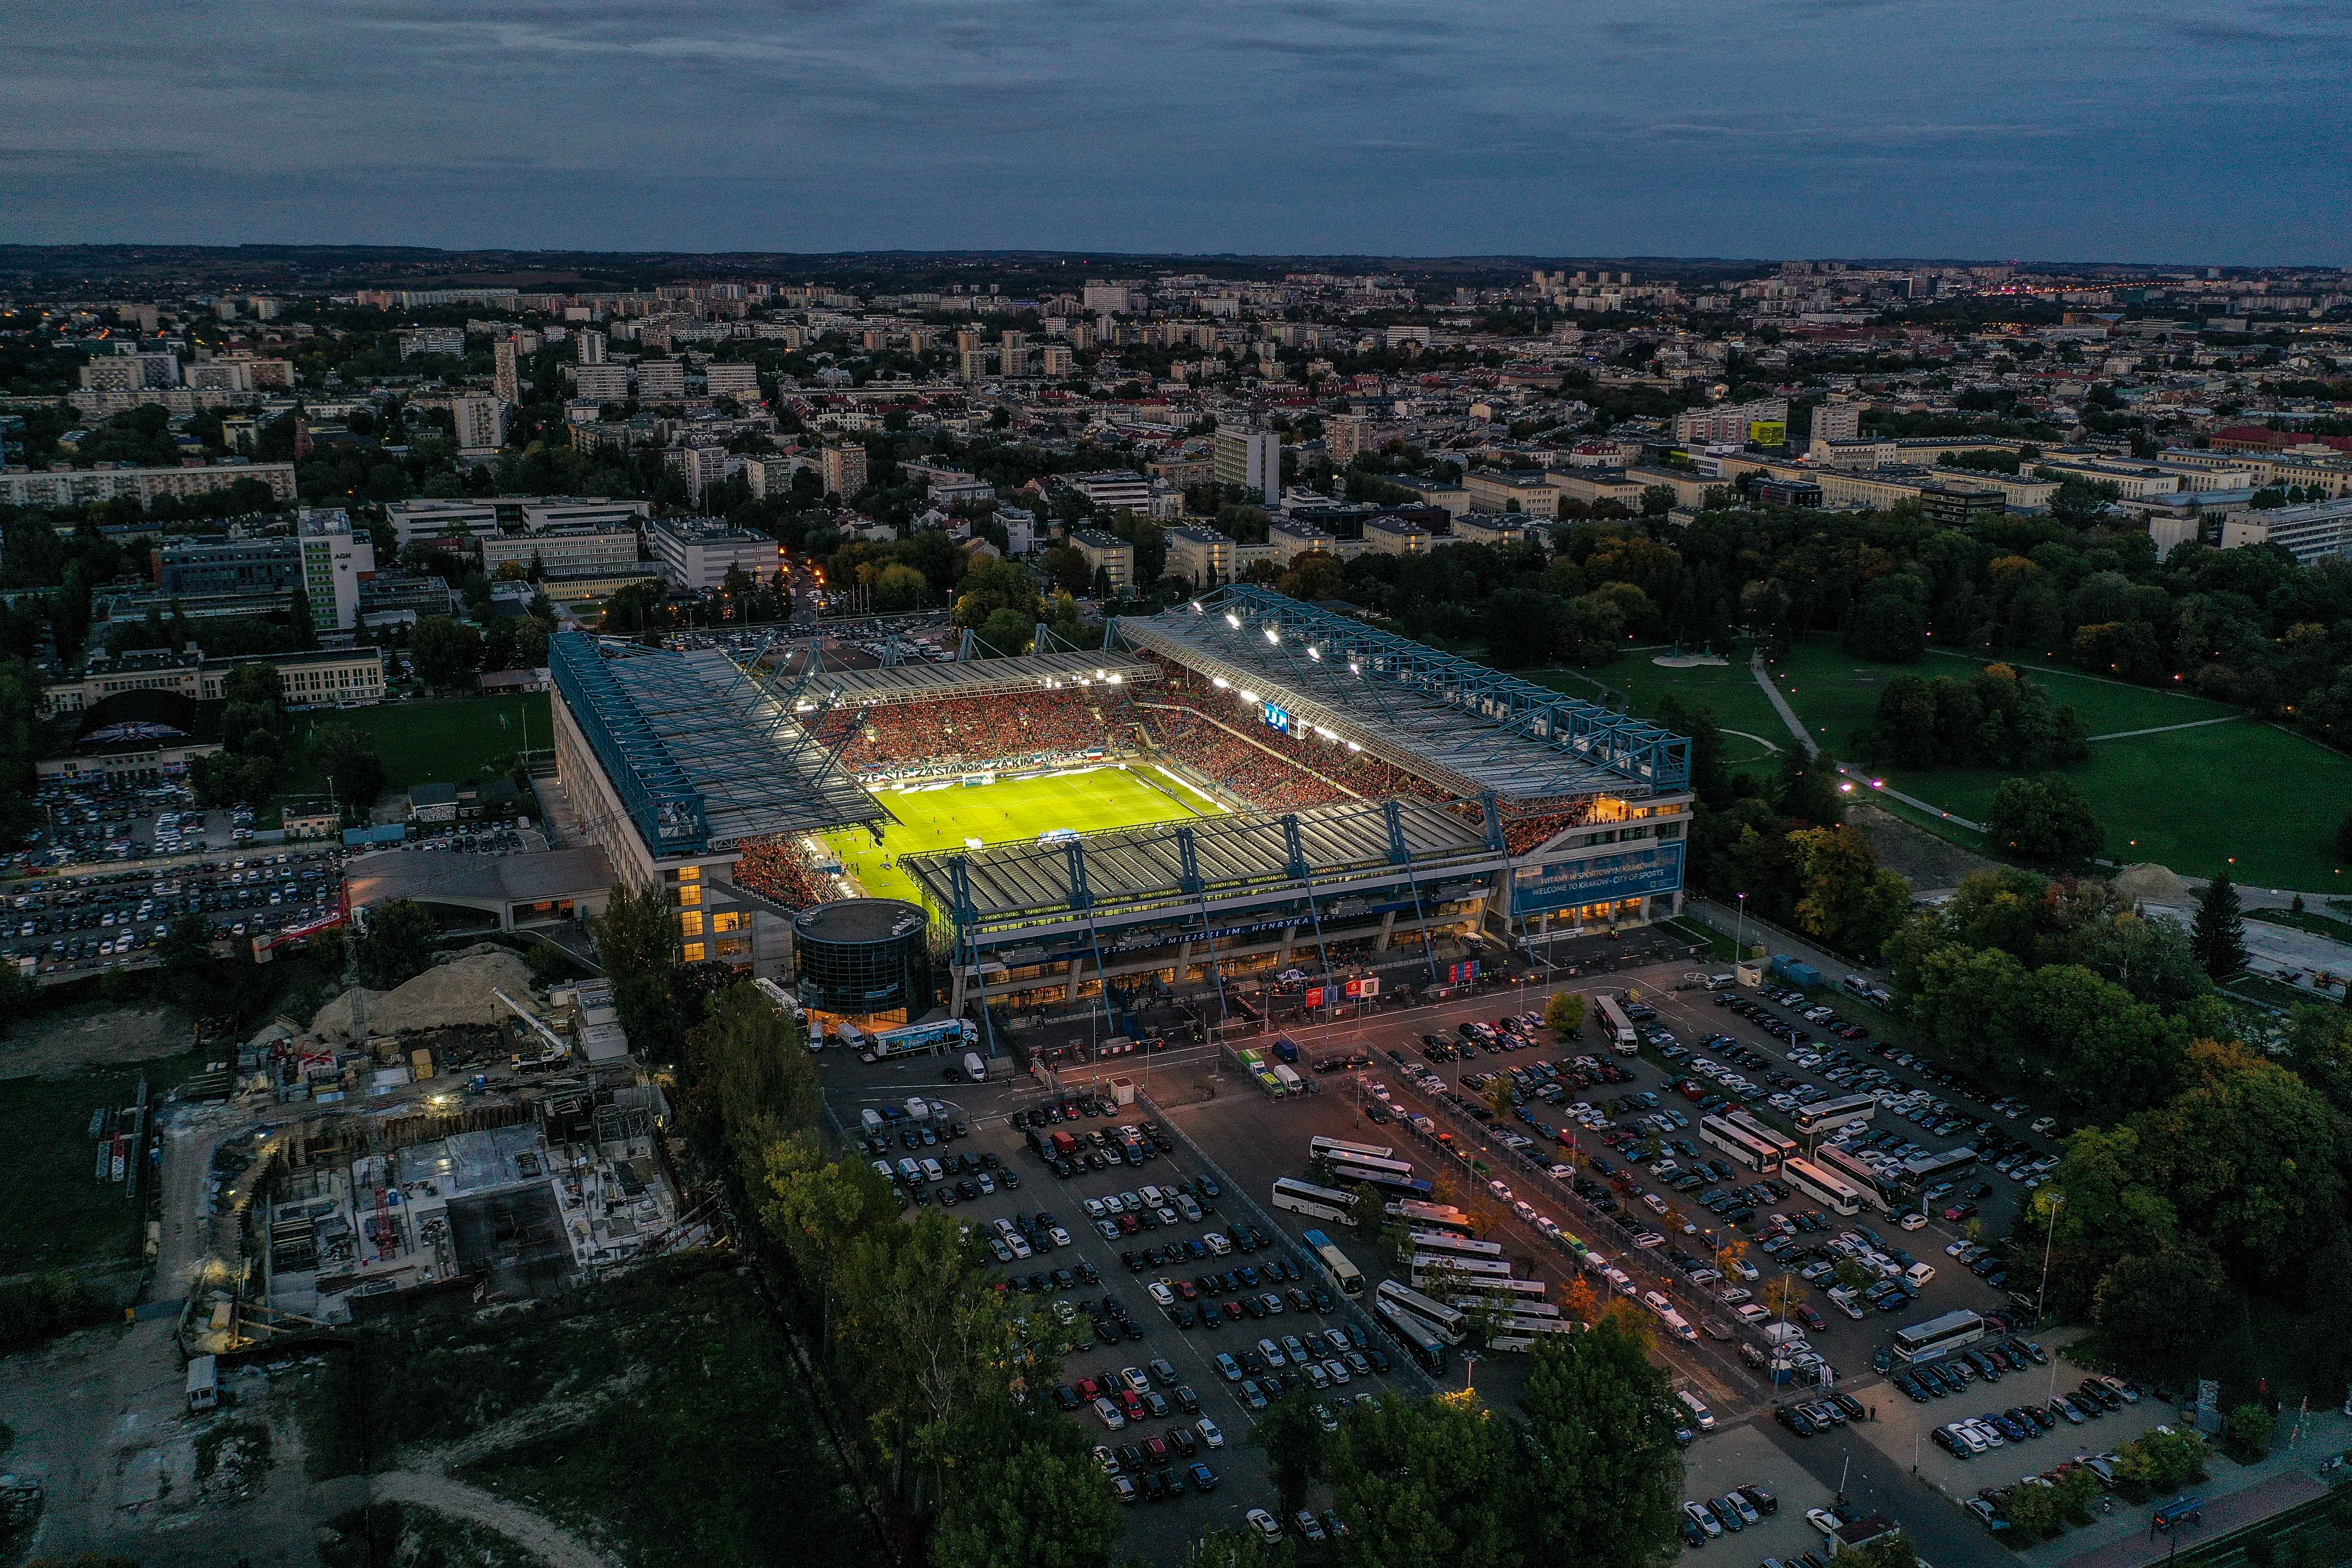 Stadion Miejski im. Henryka Reymana